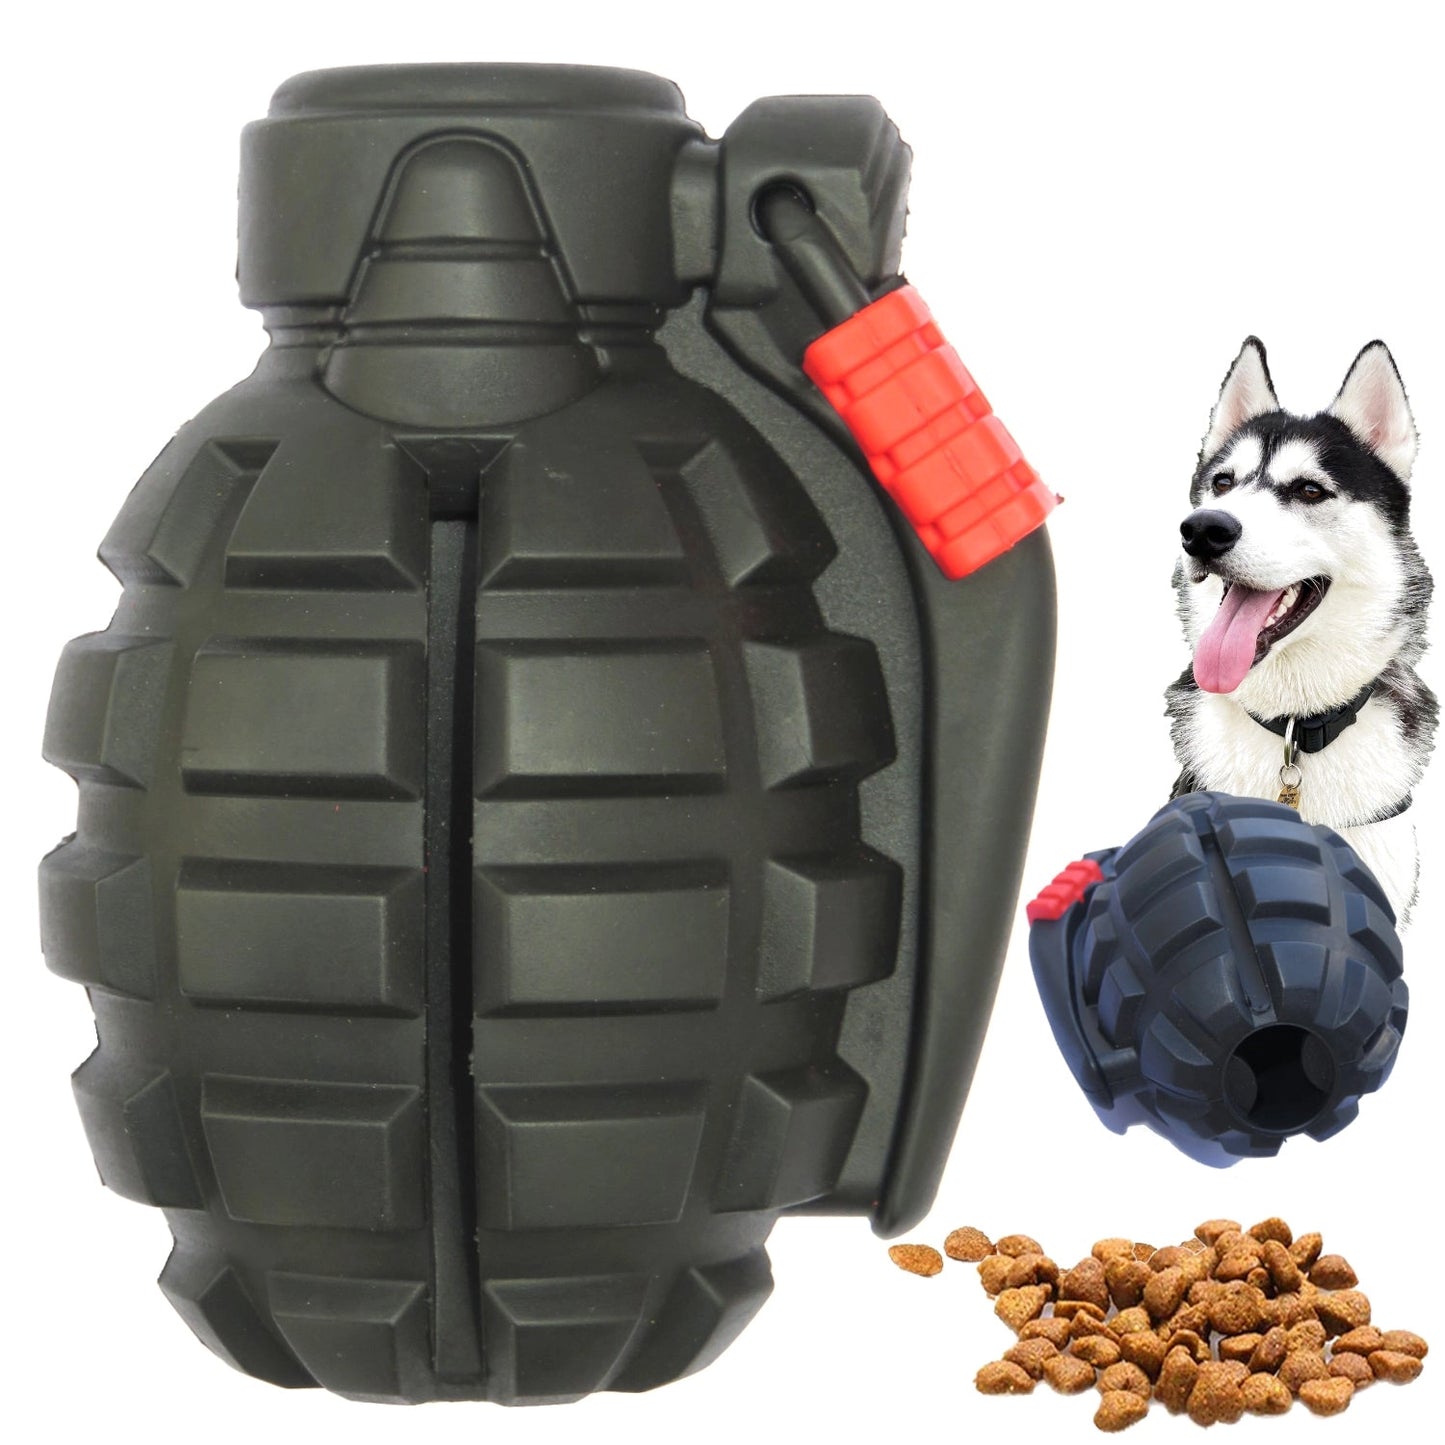 Grenade Tough Dog Toy